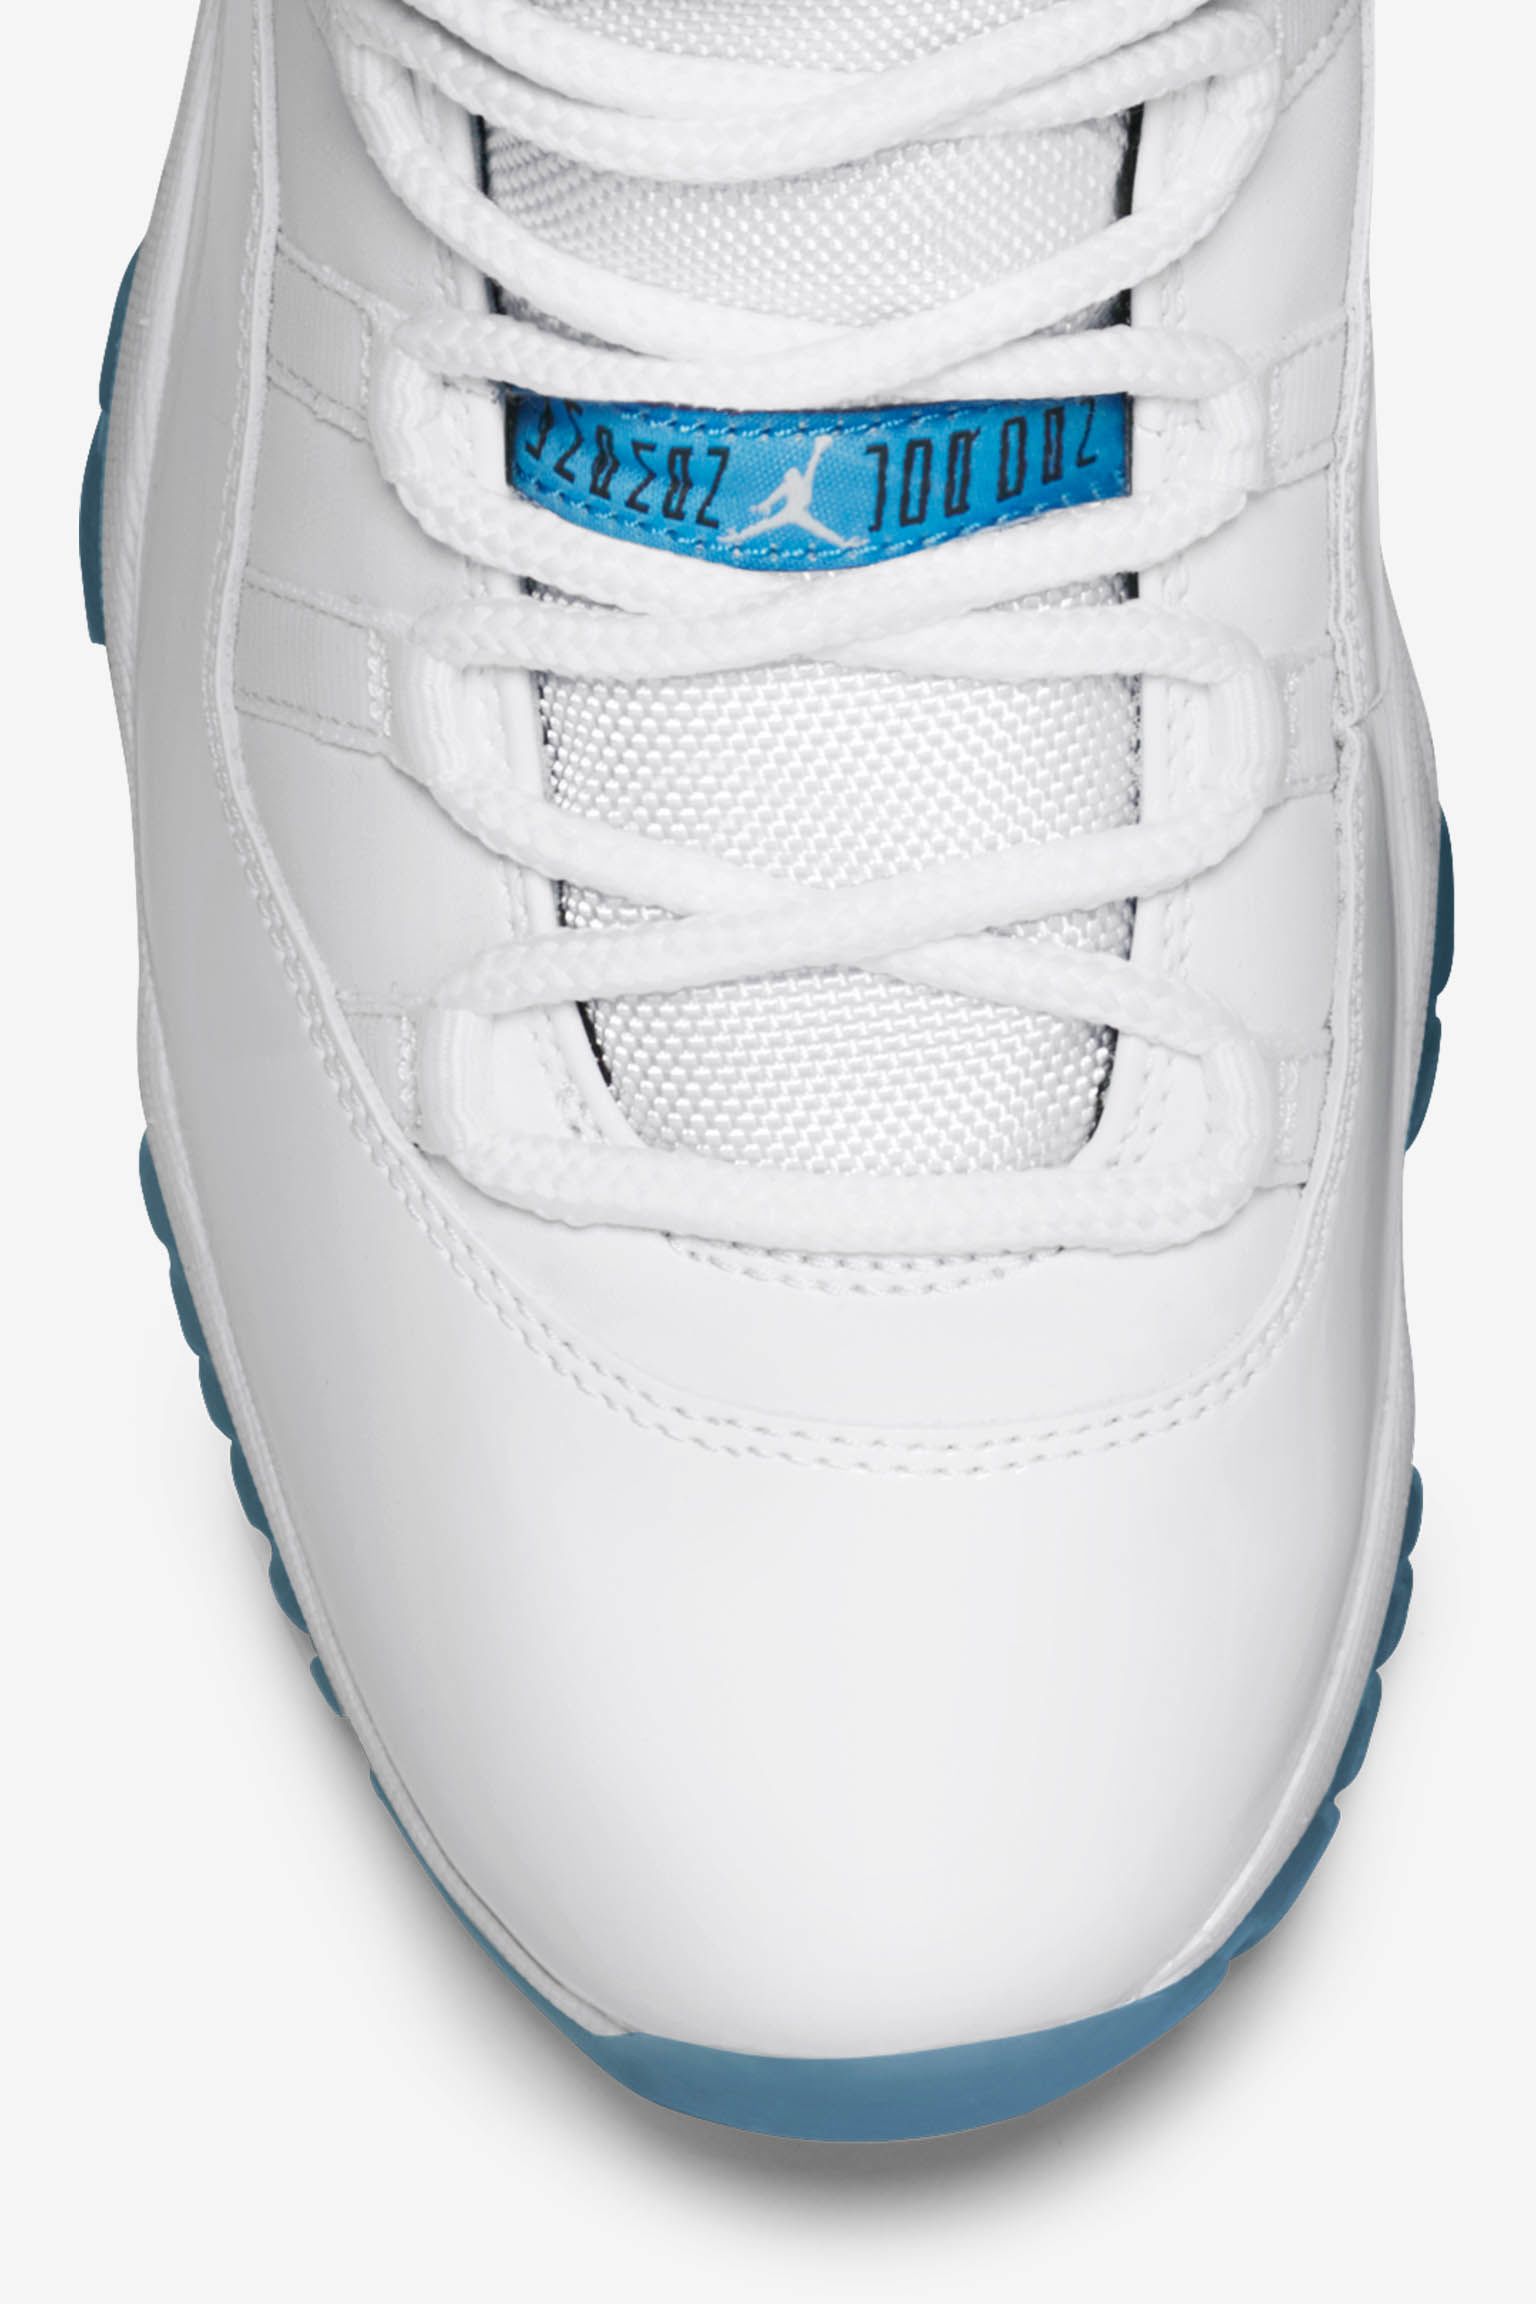 エア ジョーダン 11 レトロ 'LEGEND BLUE'の発売日. Nike SNKRS JP